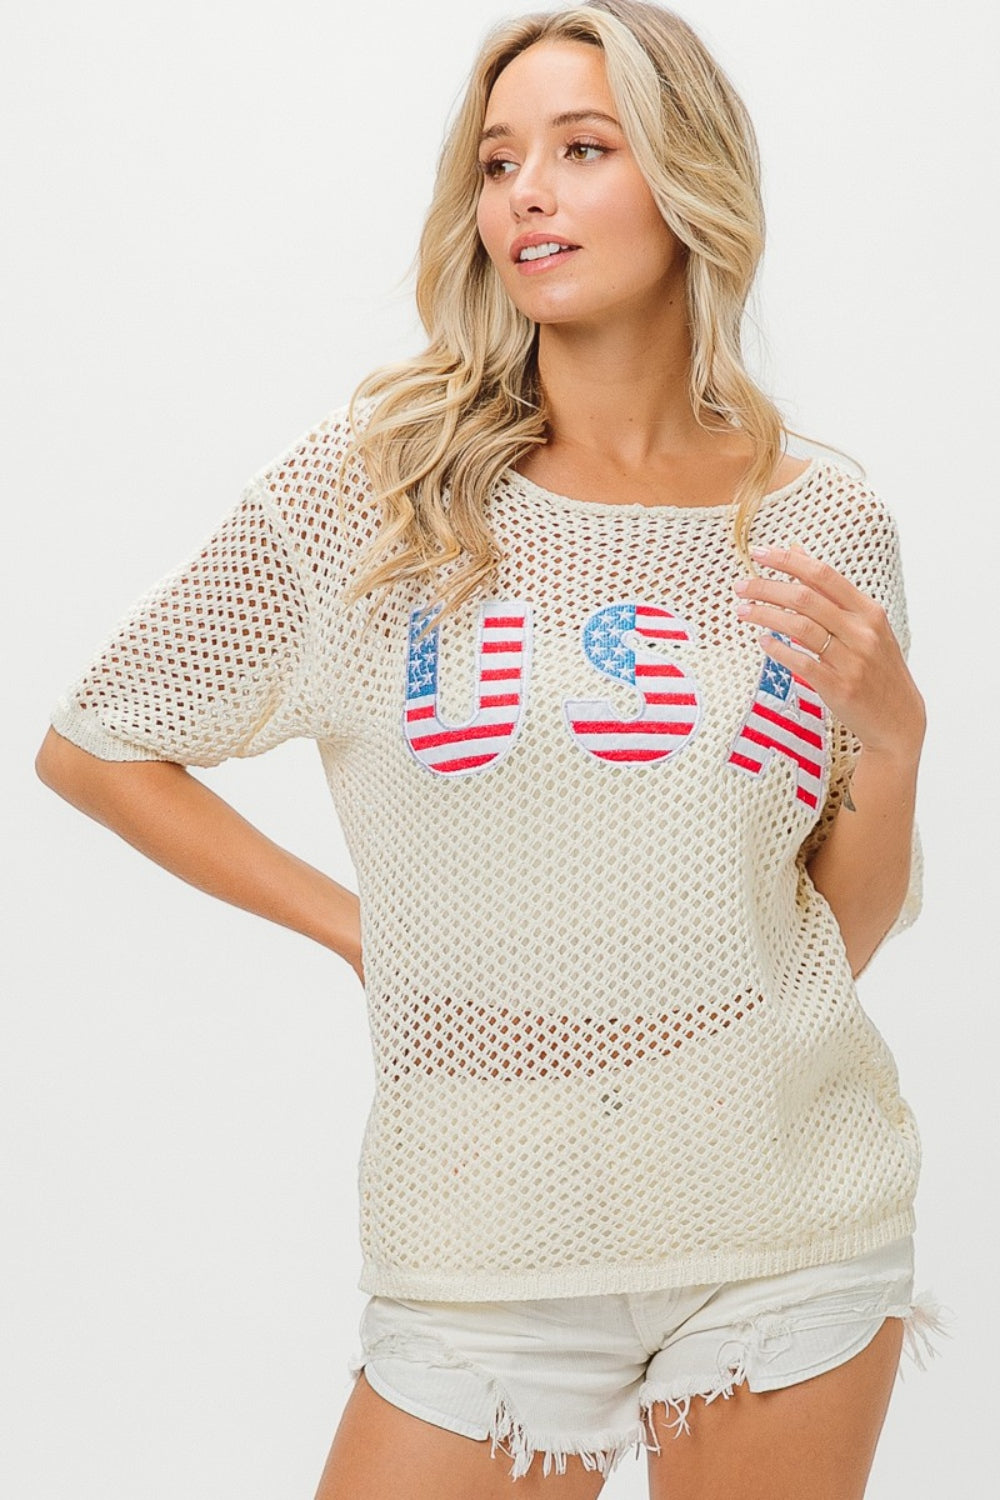 BiBi US Flag Theme Knit Cover Up